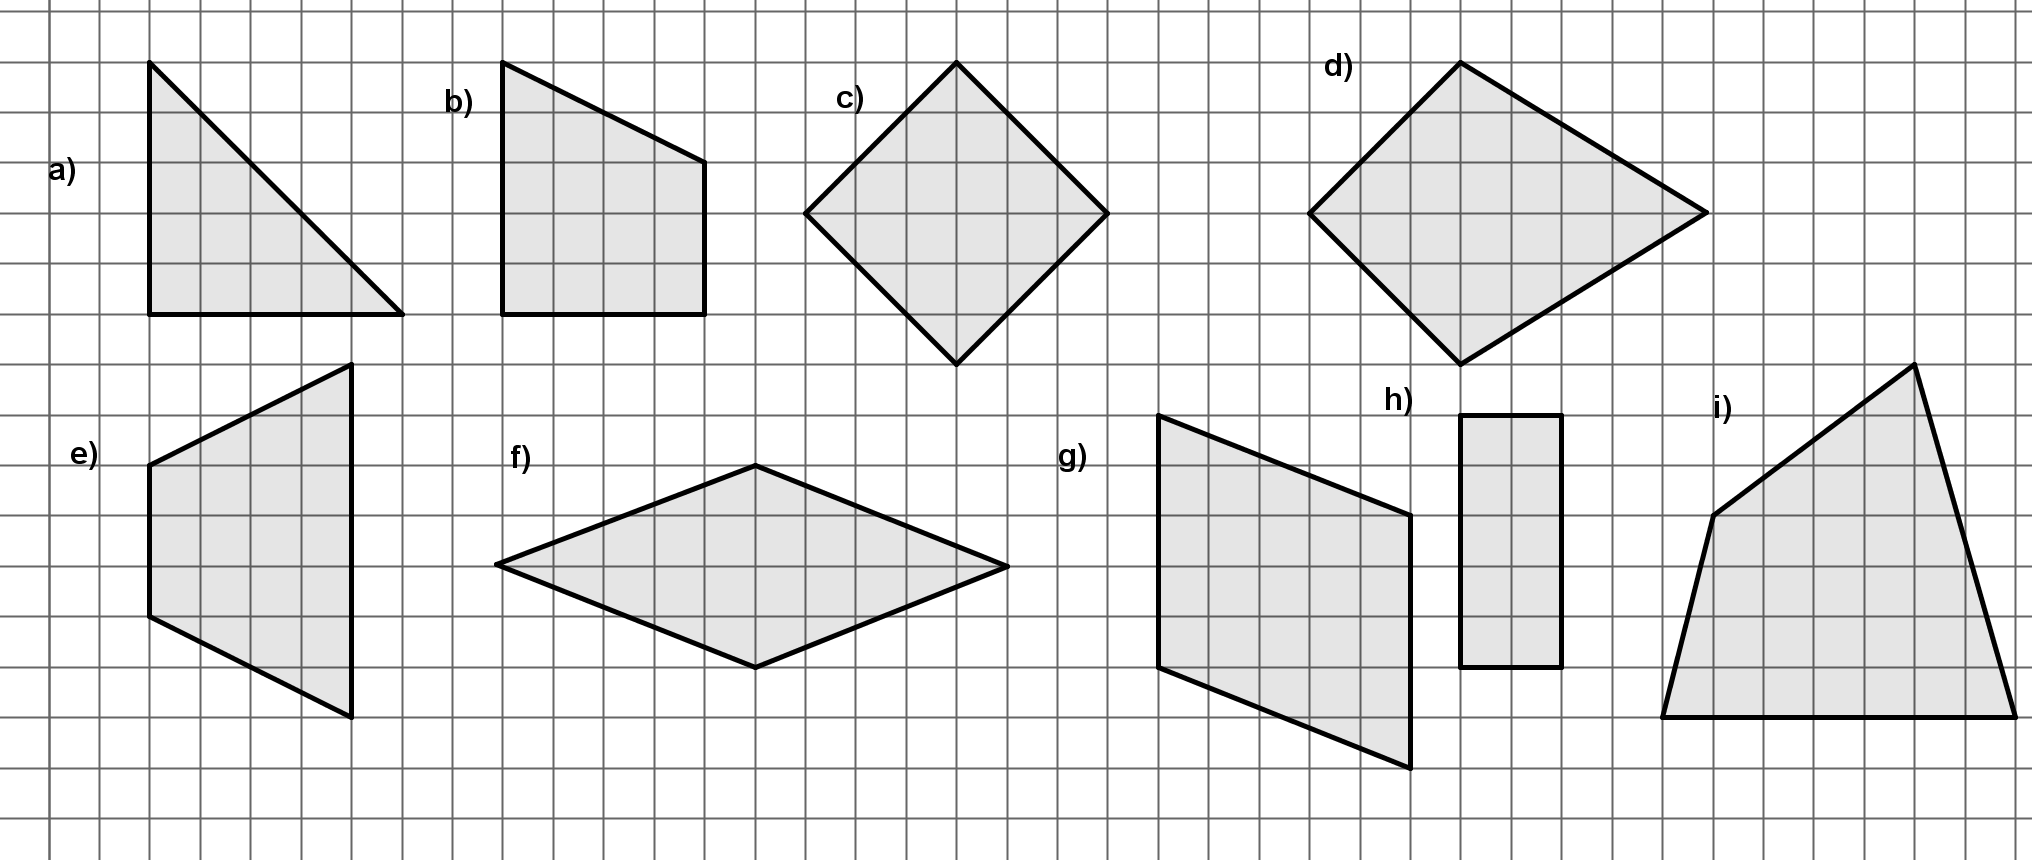 114.- Resuelve las siguientes ecuaciones: a) 1x = 4 c) x = 6 e) 3 x = + x b) x + 8 = 5 d) = x + 4 f) 1 6a = 4 a (3 a) 115.- Escribe en lenguaje algebraico: a. El perímetro de un triángulo equilátero.